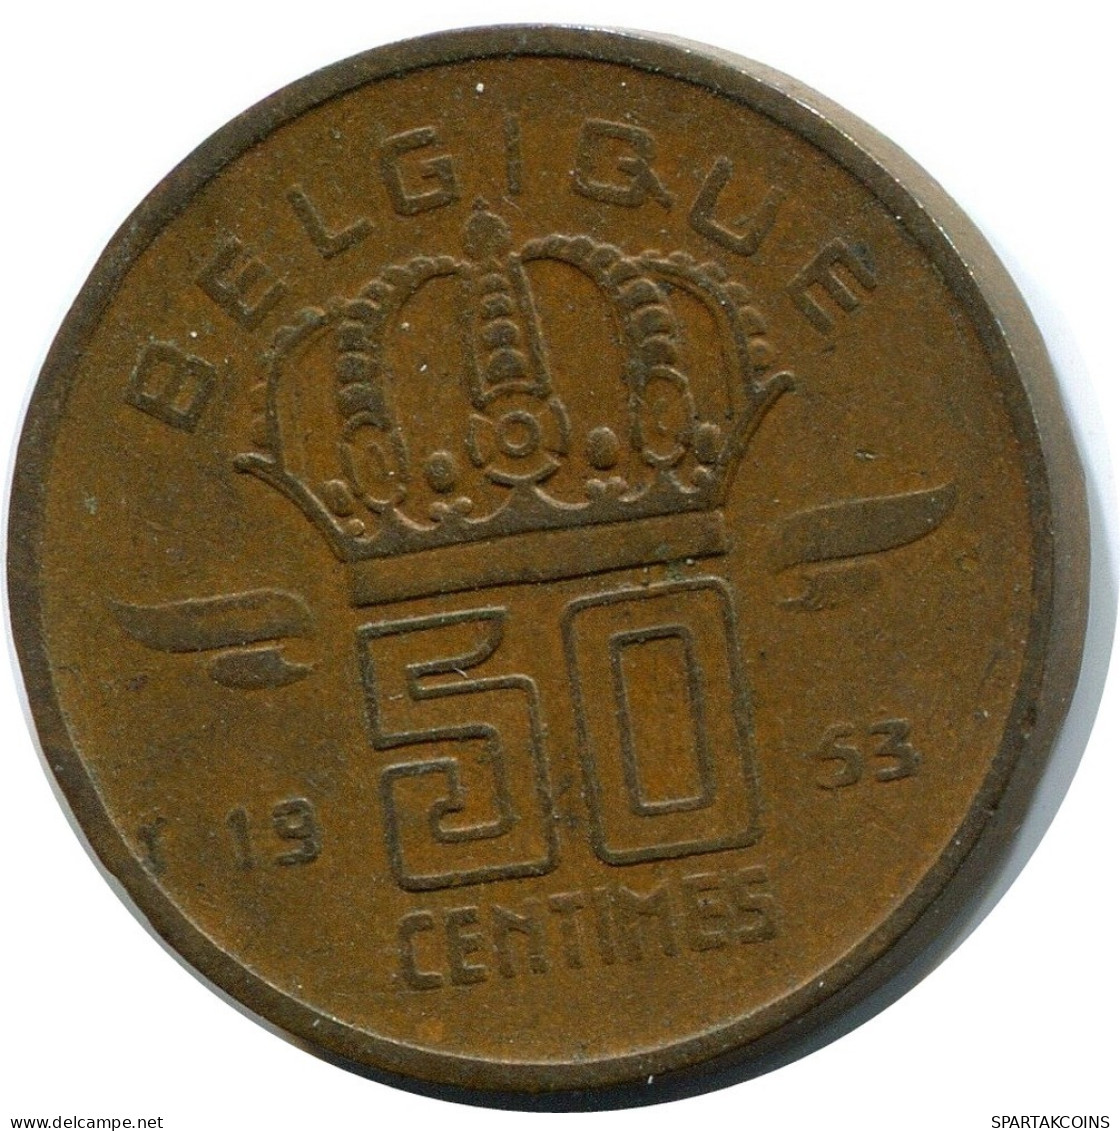 50 CENTIMES 1953 DUTCH Text BELGIUM Coin #BA395.U.A - 50 Cent